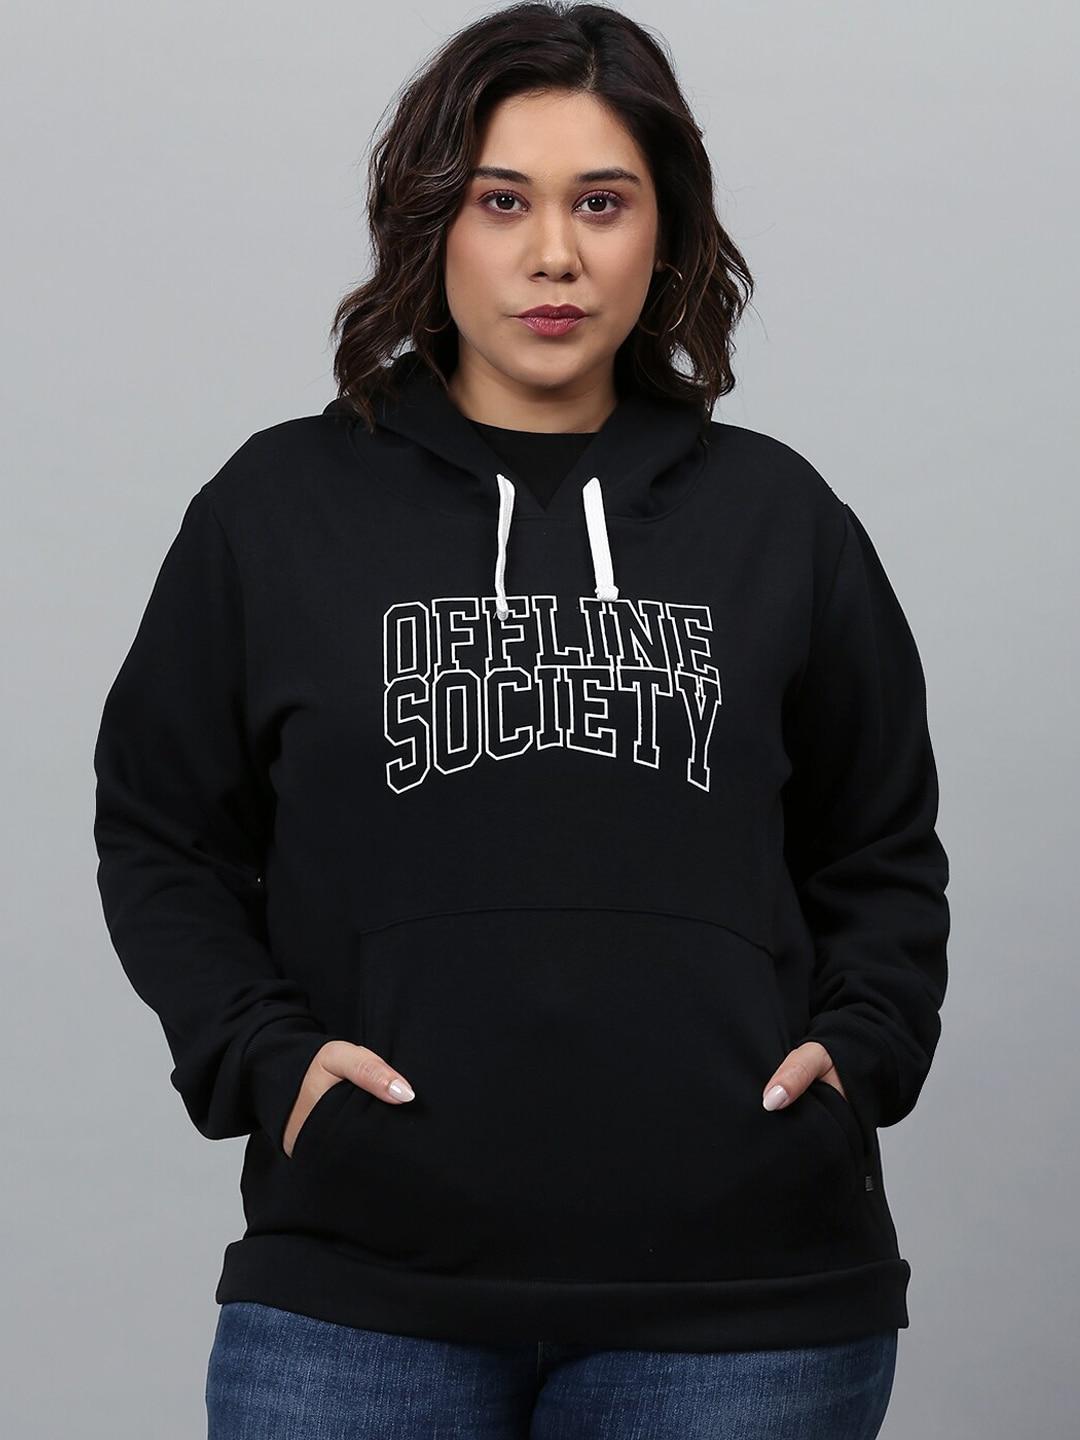 instafab-plus-women-black-printed-hooded-sweatshirt